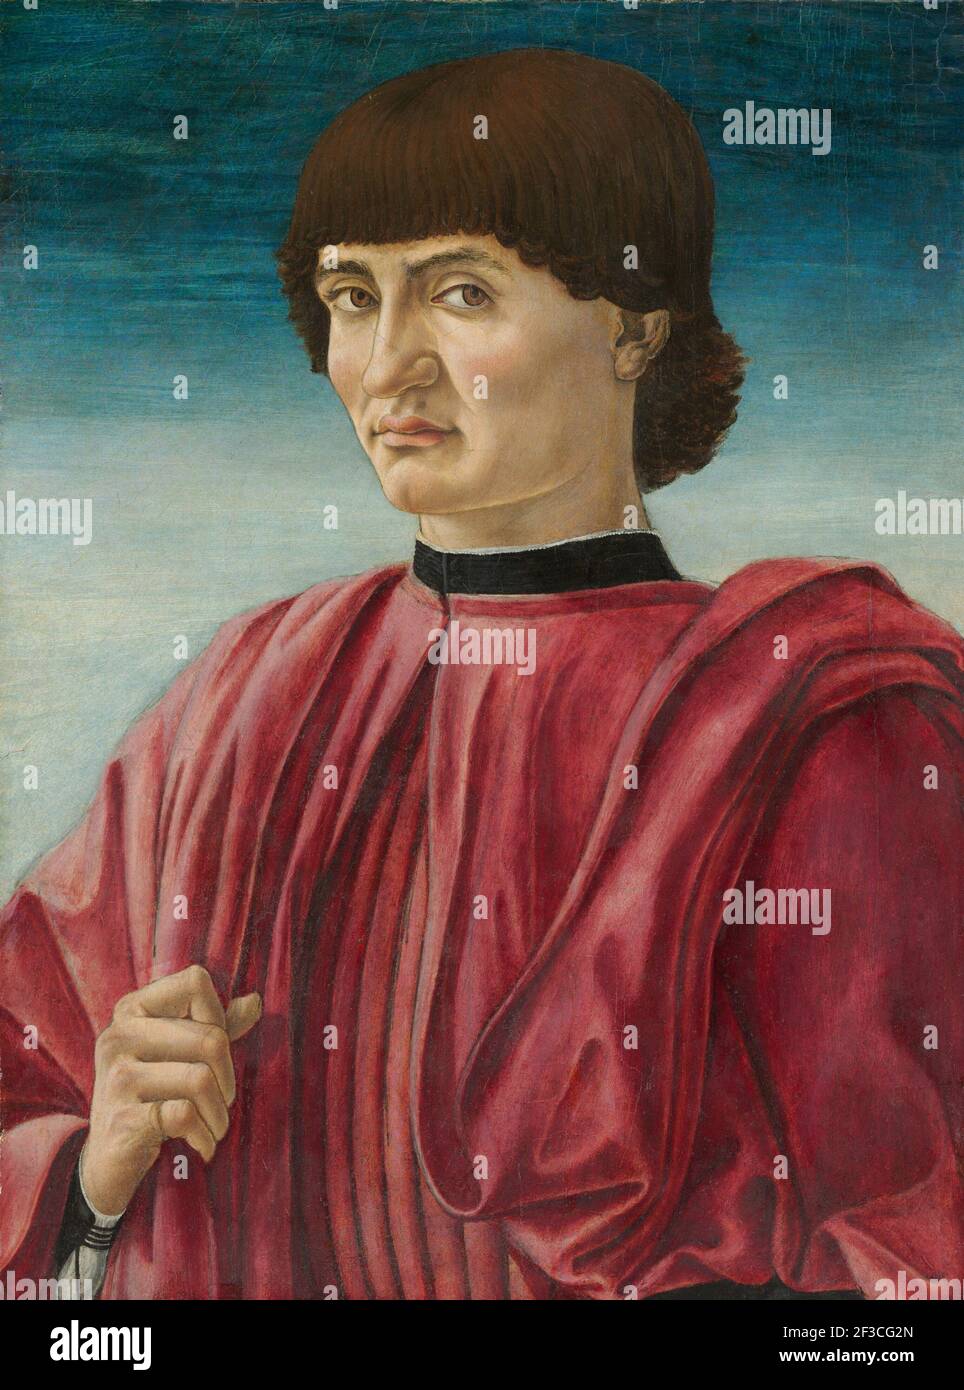 Portrait of a Man, c. 1450. Stock Photo